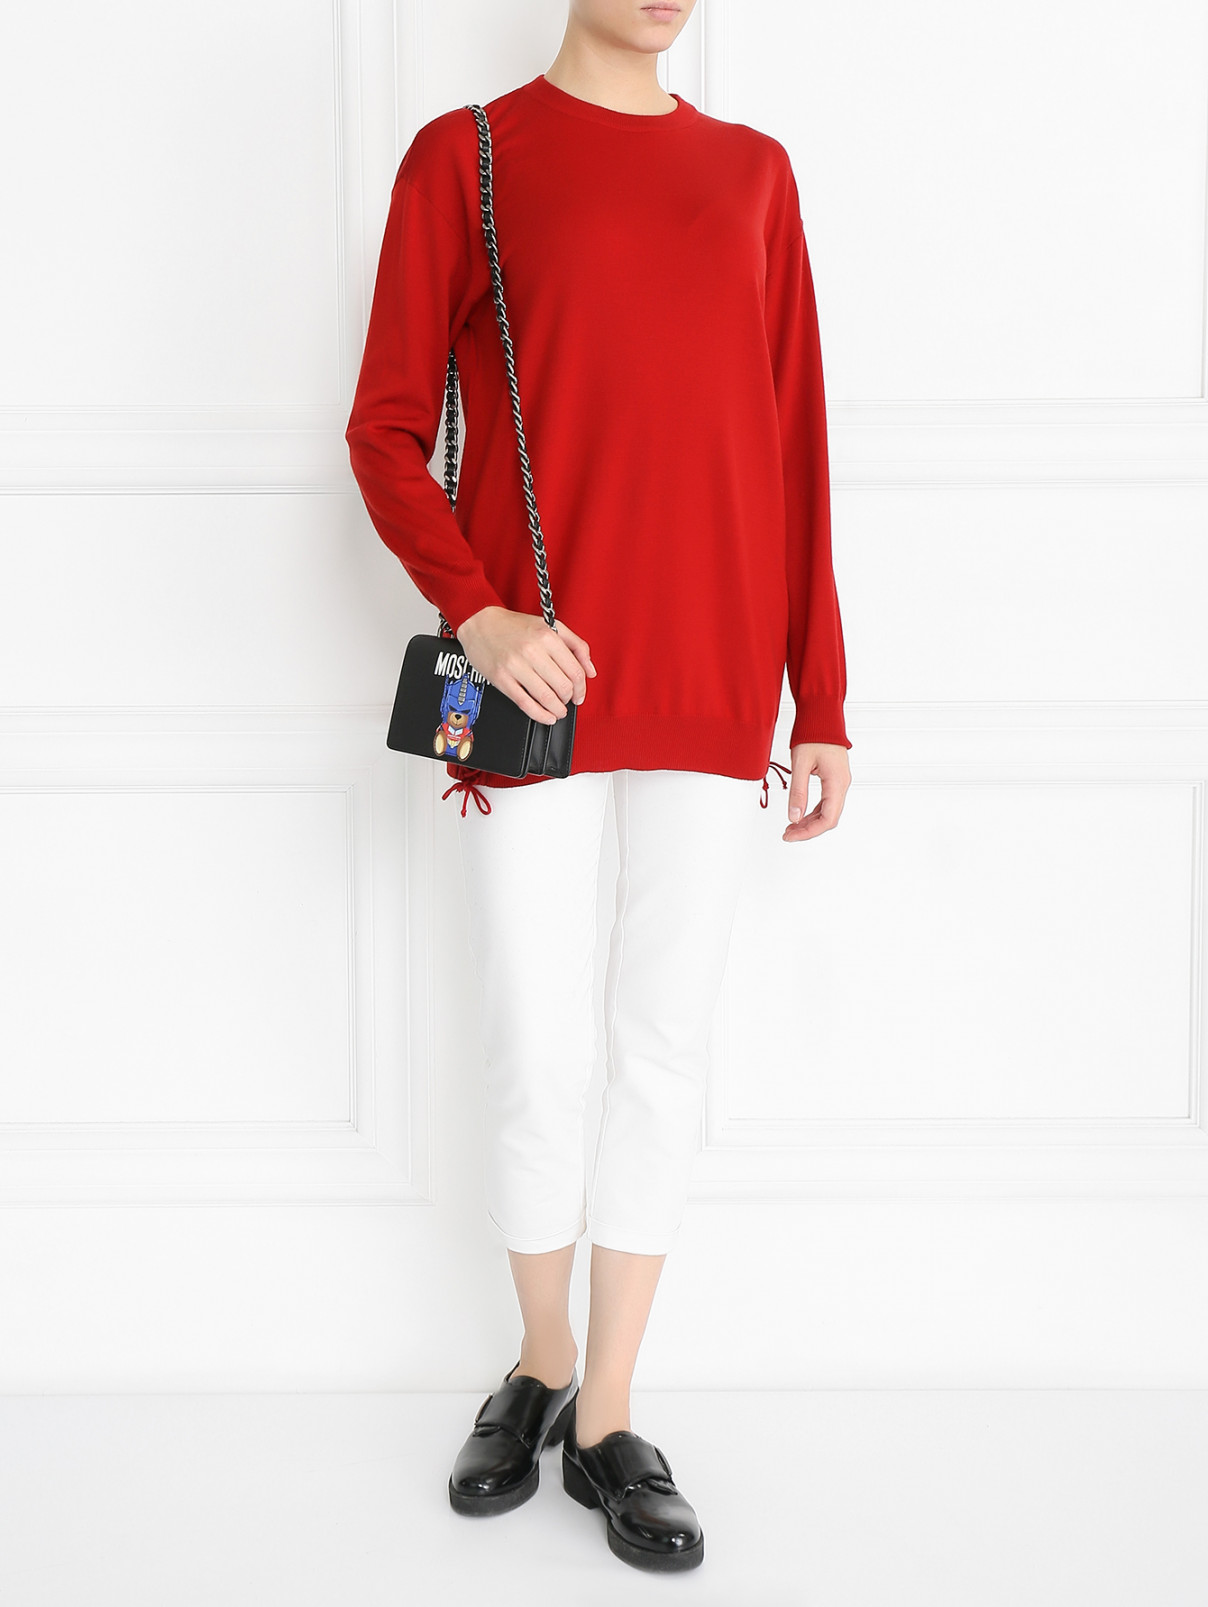 Удлиненный джемпер из шерсти с декоративной шнуровкой Moschino Couture  –  Модель Общий вид  – Цвет:  Красный